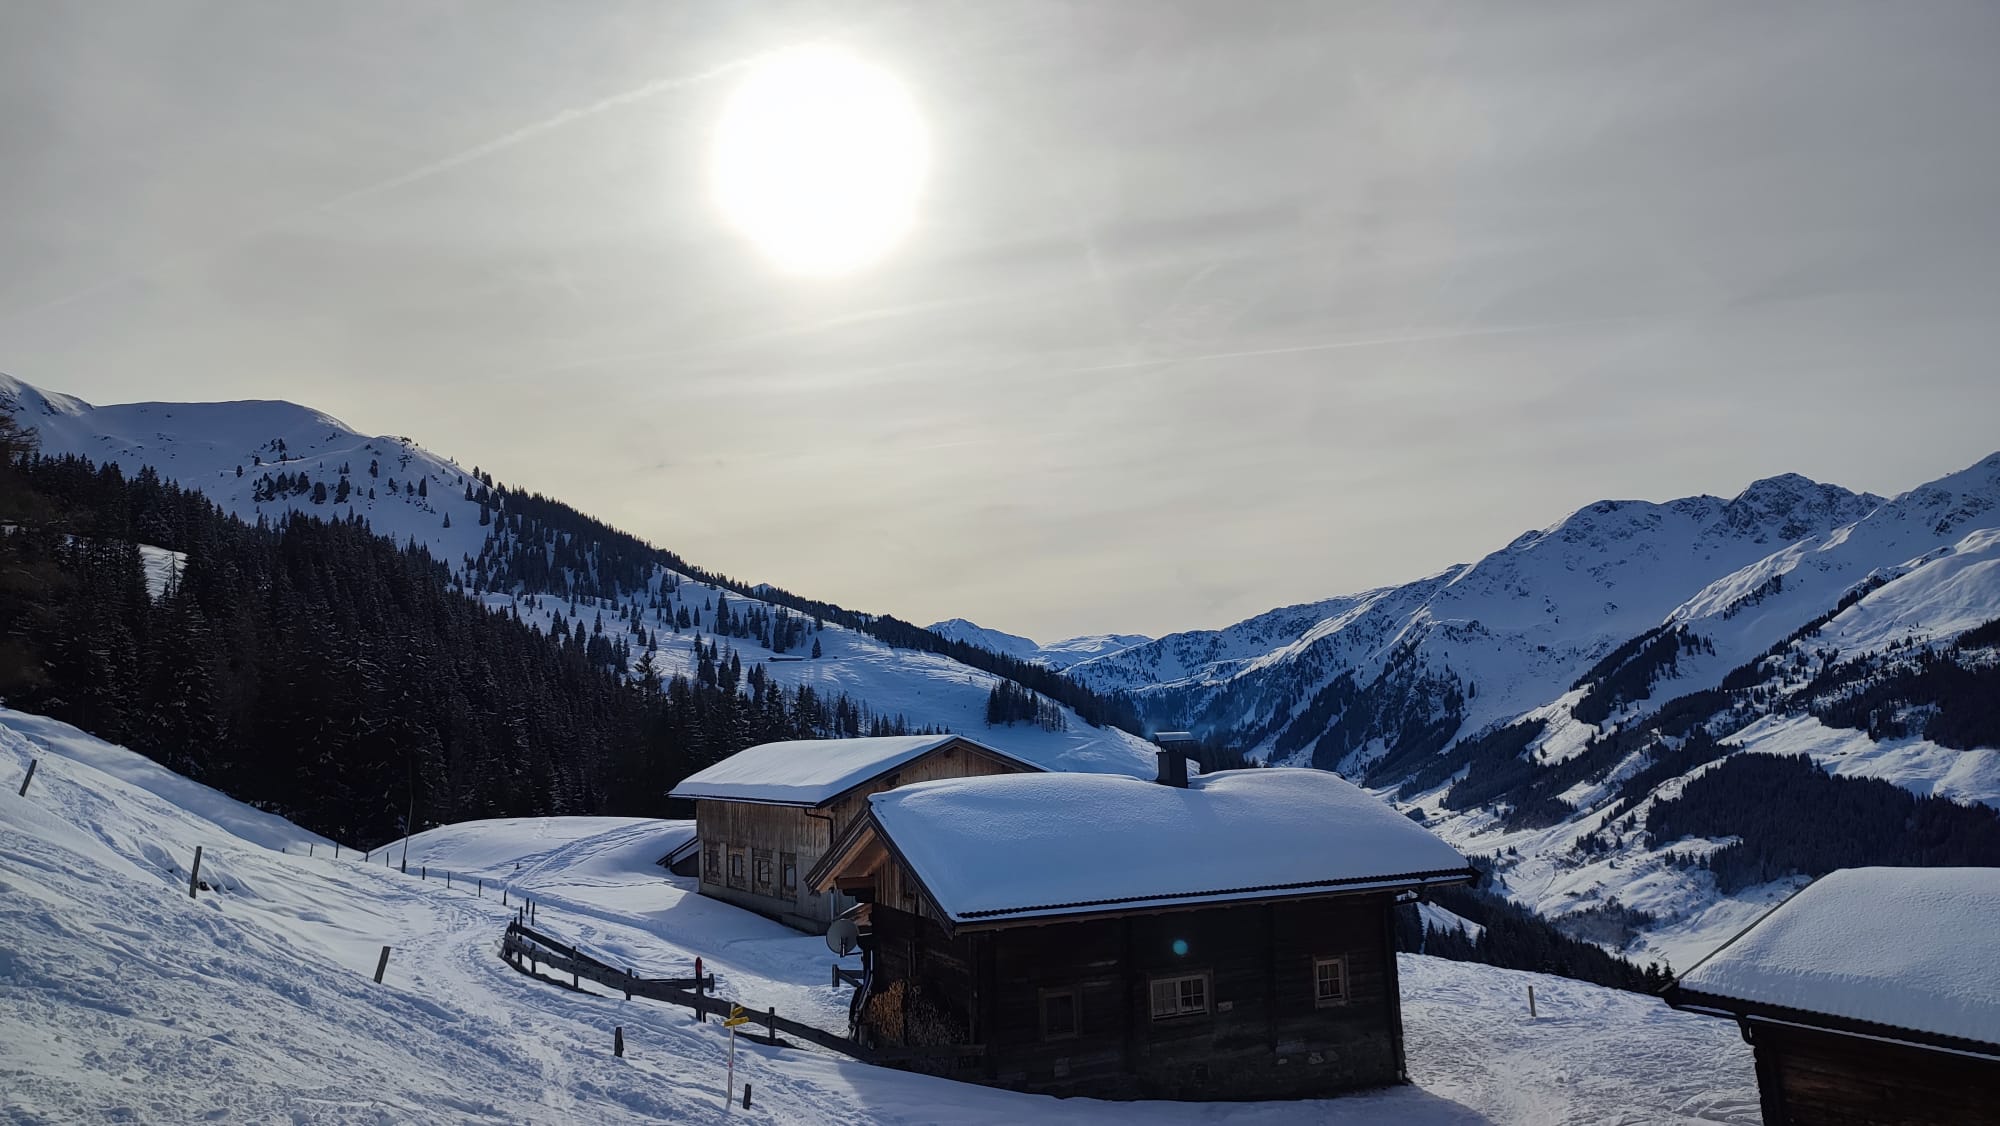 Sonne steht über einer schneebedeckten Hütte in den Bergen